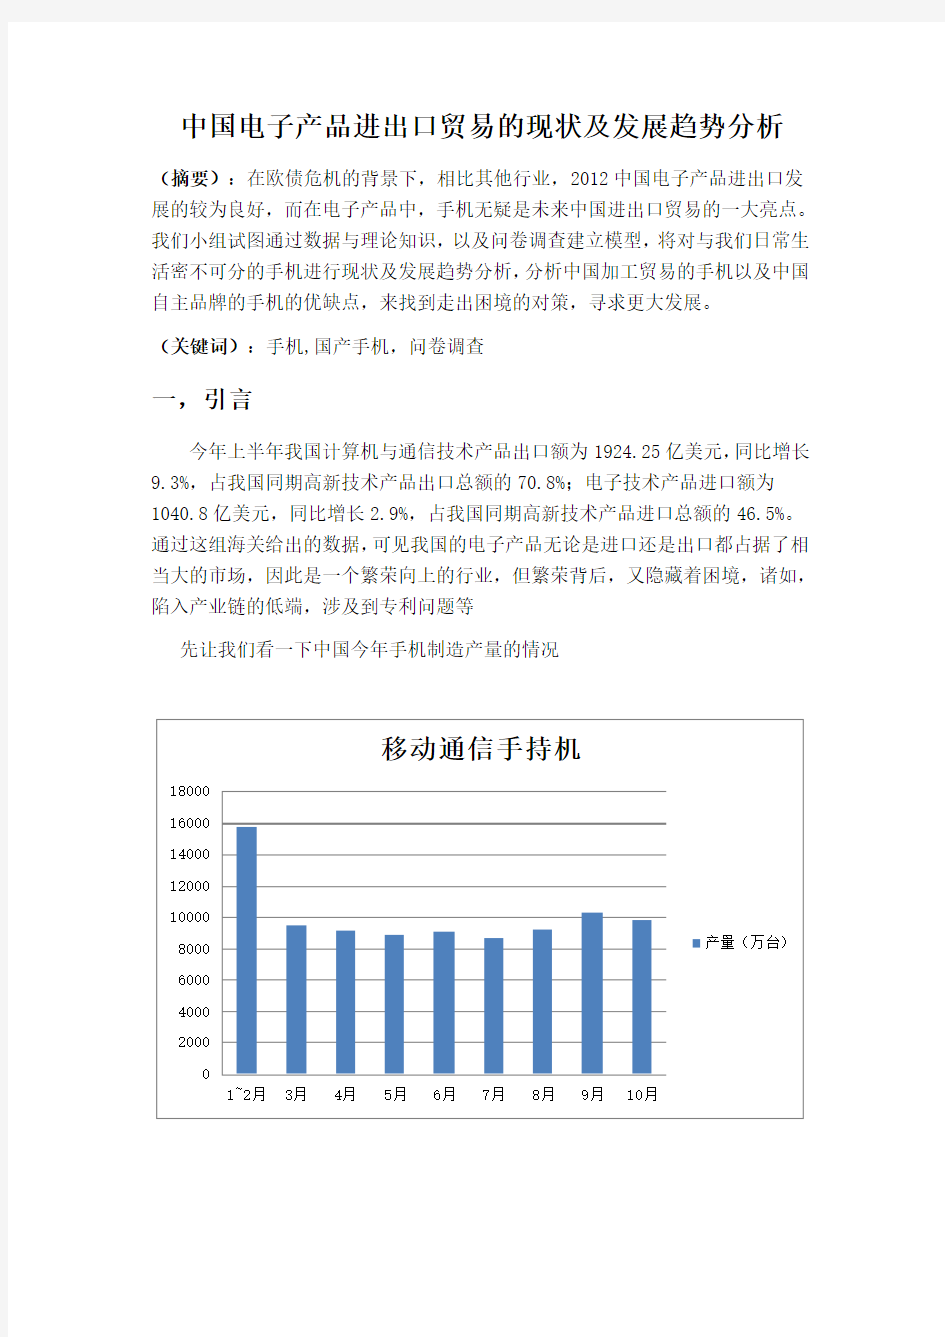 国贸2中国电子产品进出口贸易的现状及发展趋势分析